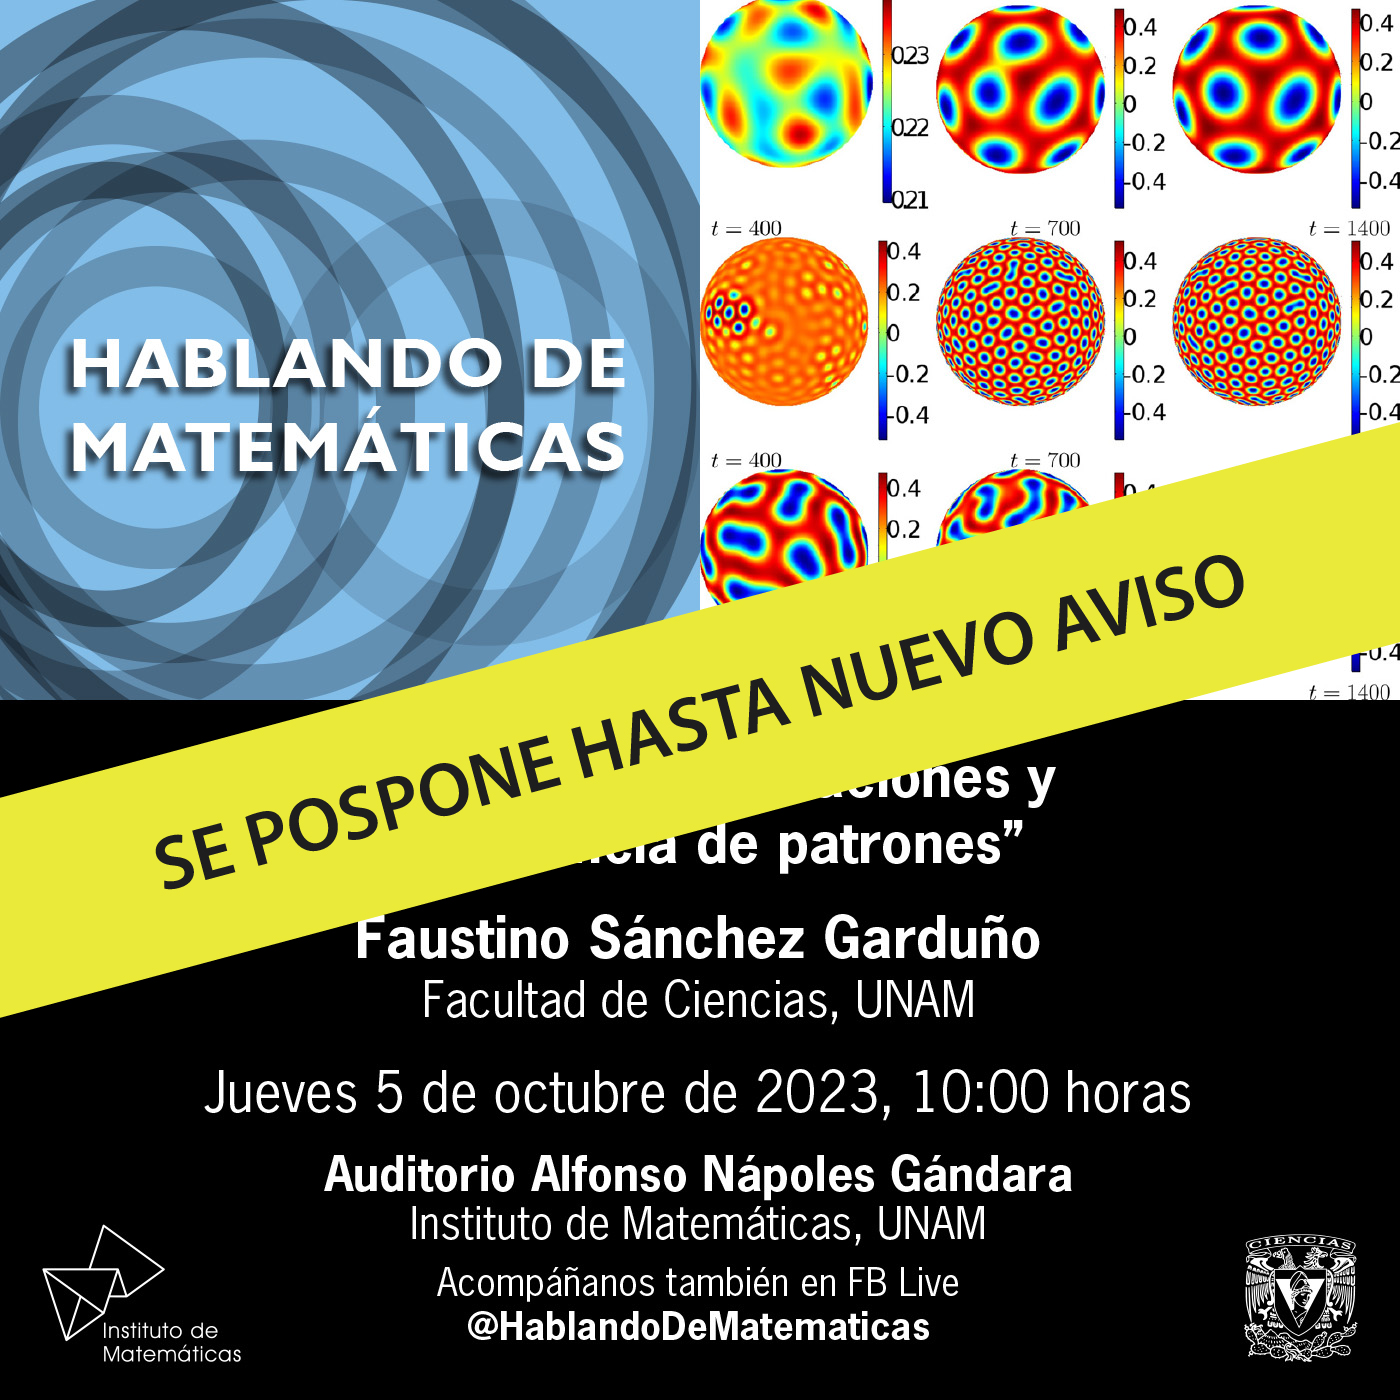 Entre ondas, poblaciones y emergencia de patrones, Faustino Sánchez Garduño - Facultad de Ciencias, UNAM, jueves 5 de octubre de 2023